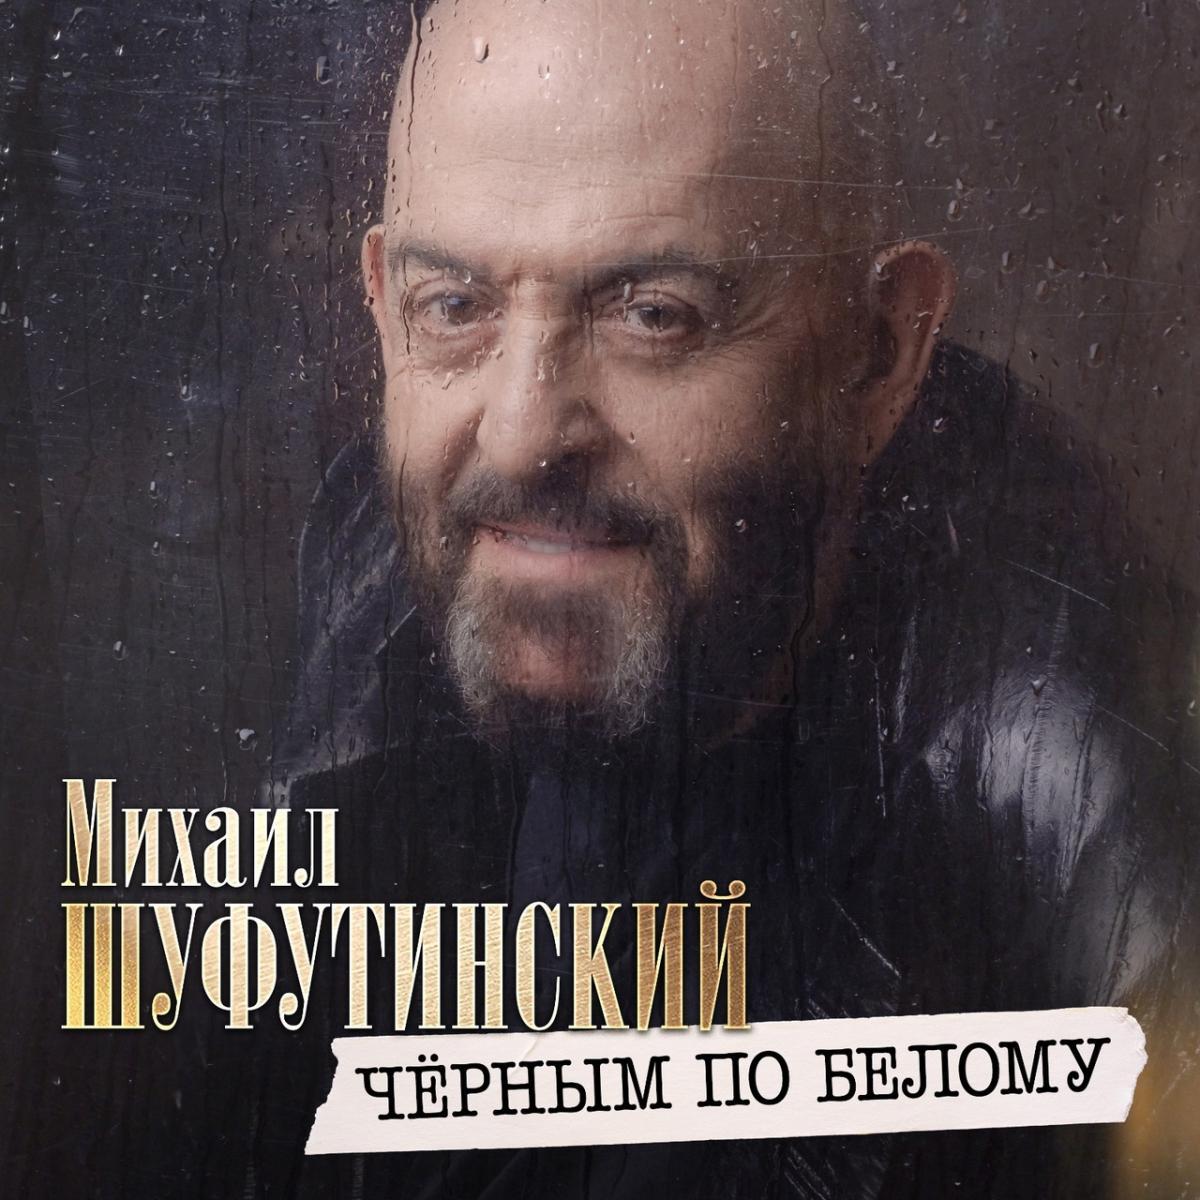 Михаил Шуфутинский представил премьеру песни «Чёрным по белому»